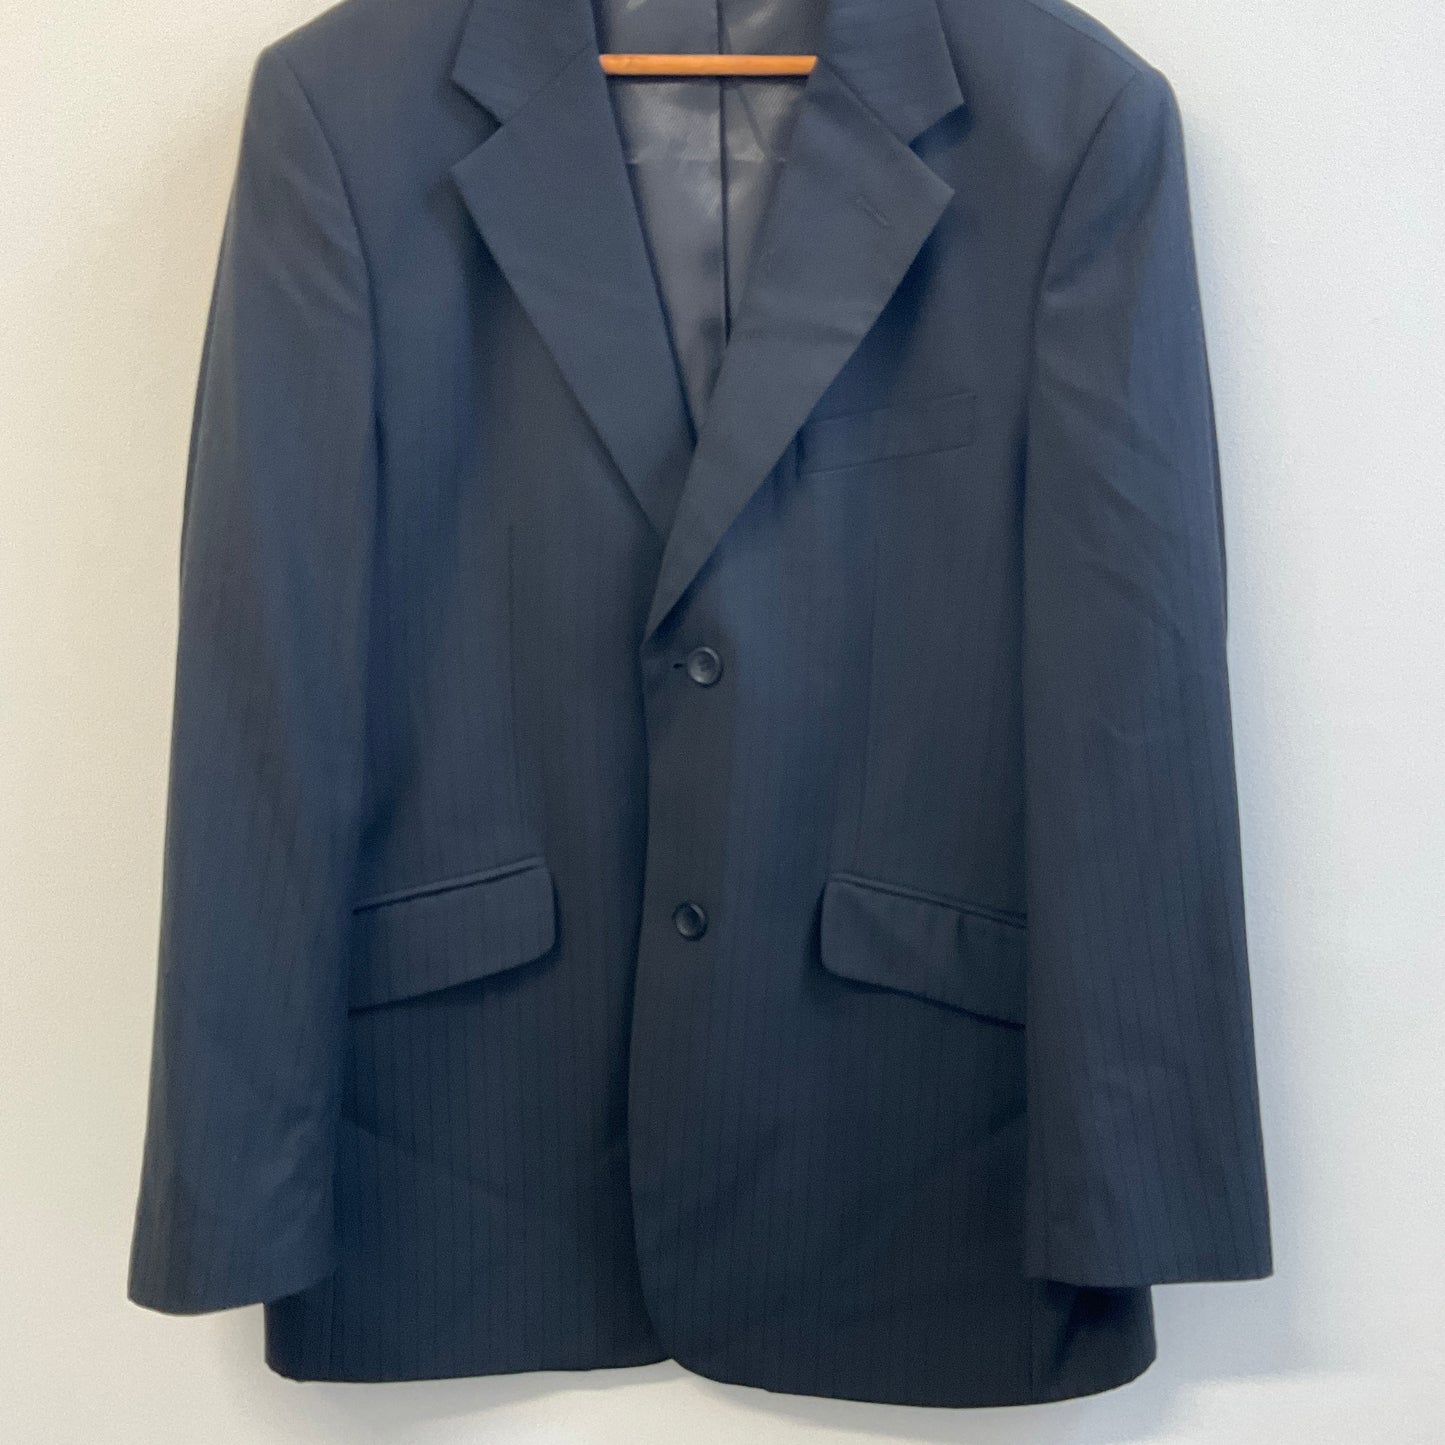 Voeut Milano - Men's Suit Jacket